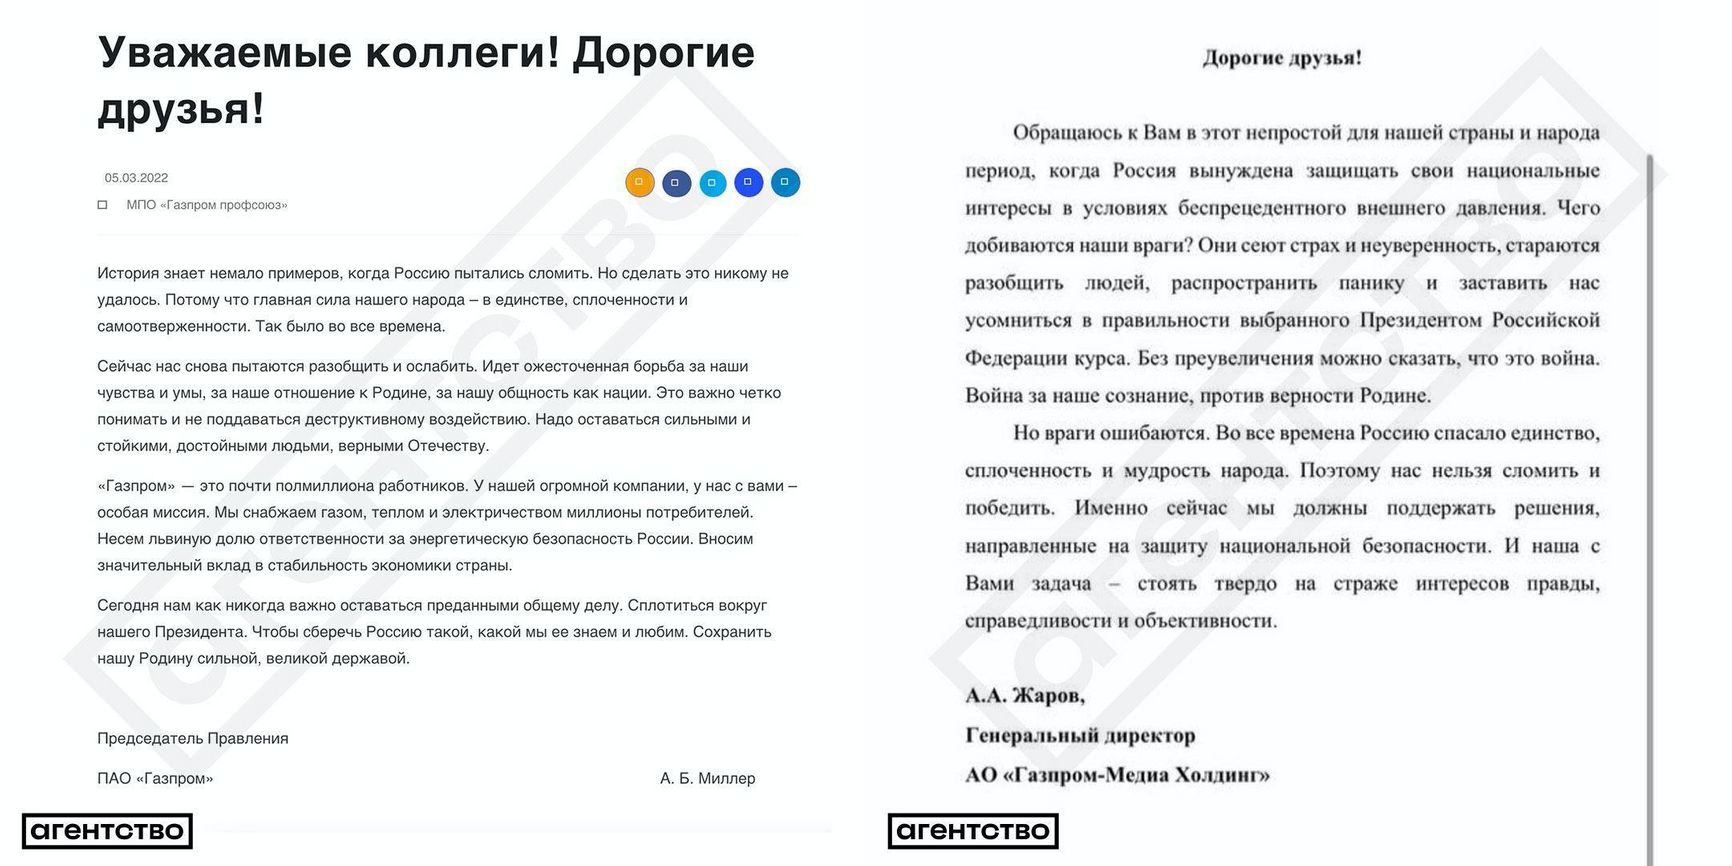 «Это война. Война за наше сознание». Главы «Газпрома» отправили сотрудникам письма, в которых потребовали «сплотиться вокруг Президента»